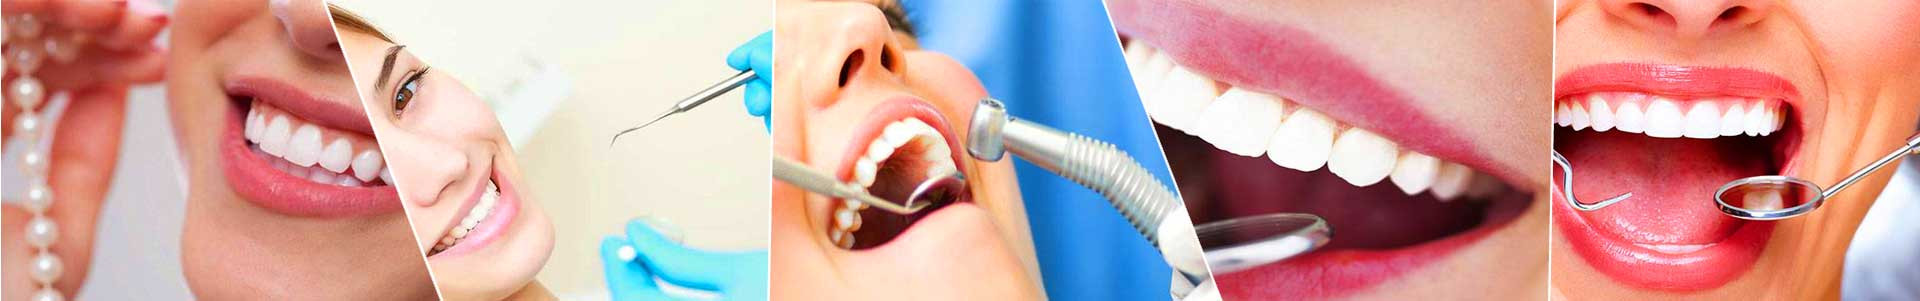 بهترین خرید کلینیک دندانپزشکی معلم کرج با بیشترین درصد تخفیف در قیمت - جدید